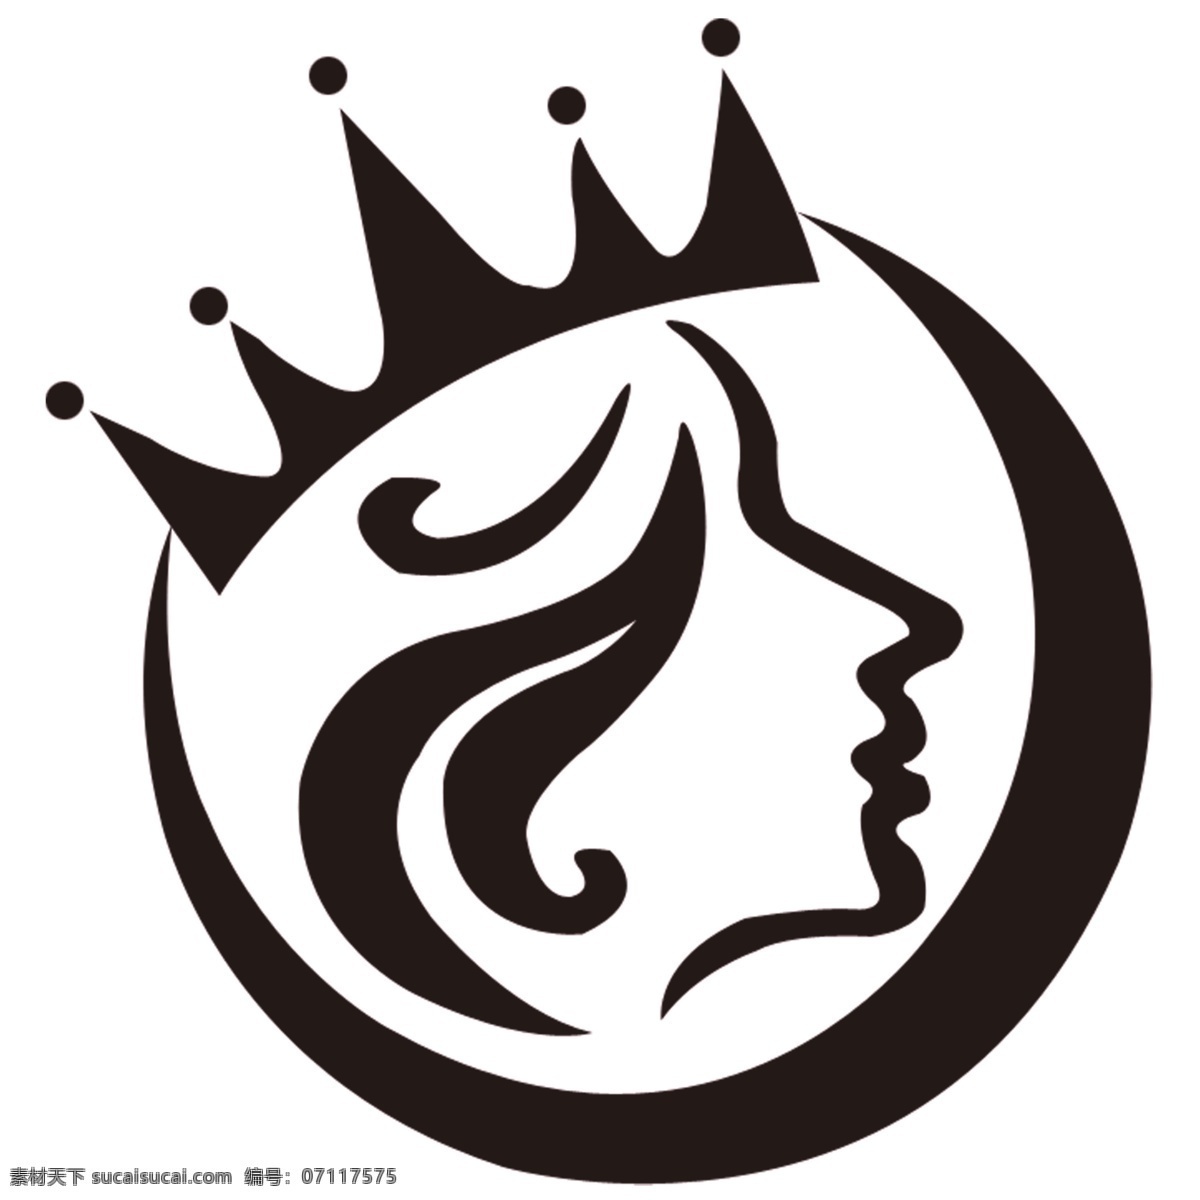 美女 皇冠 美容 美发 标志 logo设计 矢量图